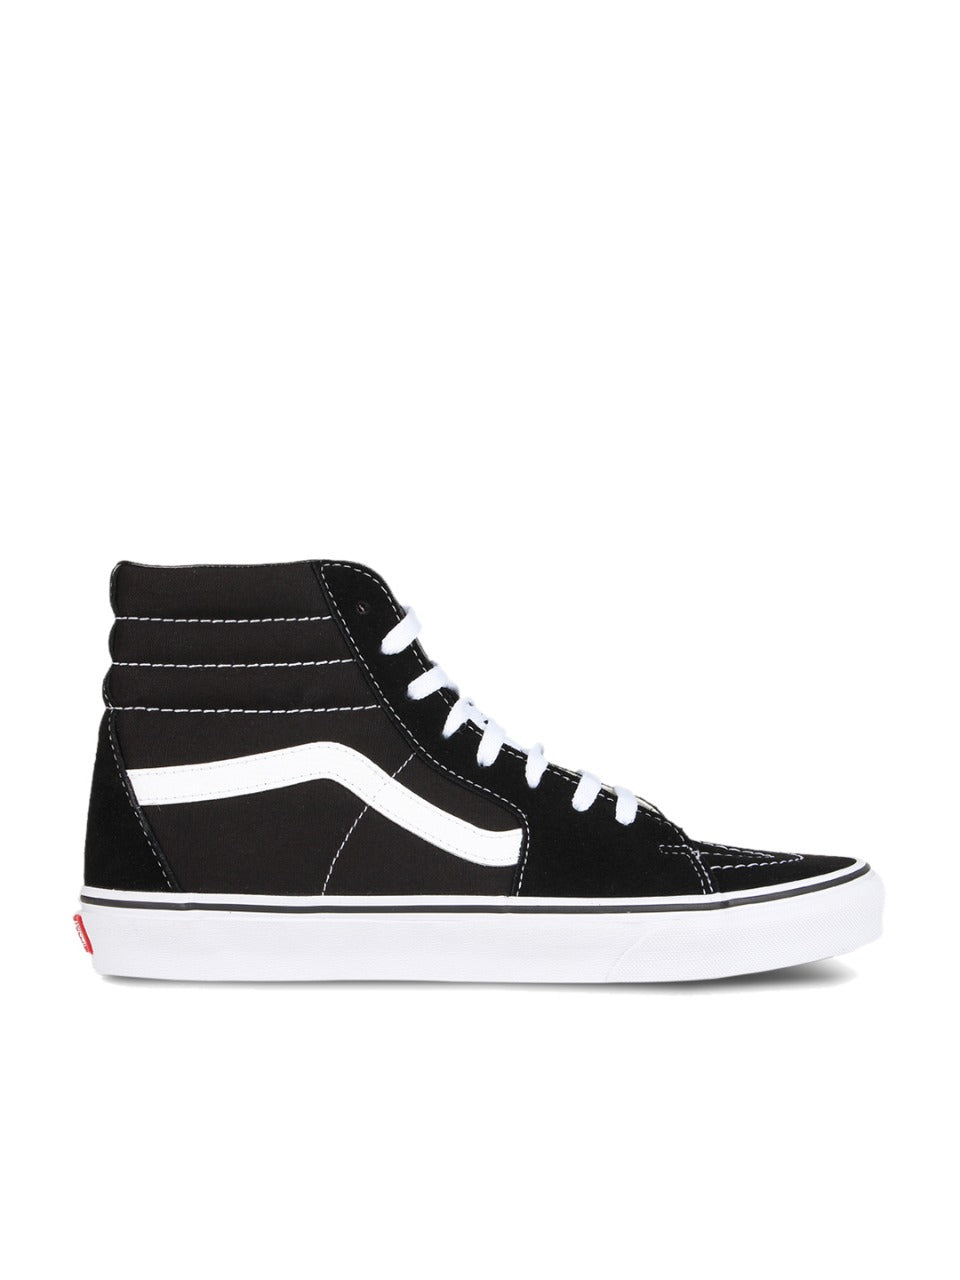 Vans Unisex Sk8-Hi Leather Sneakers Black/White For Men's Or Women's